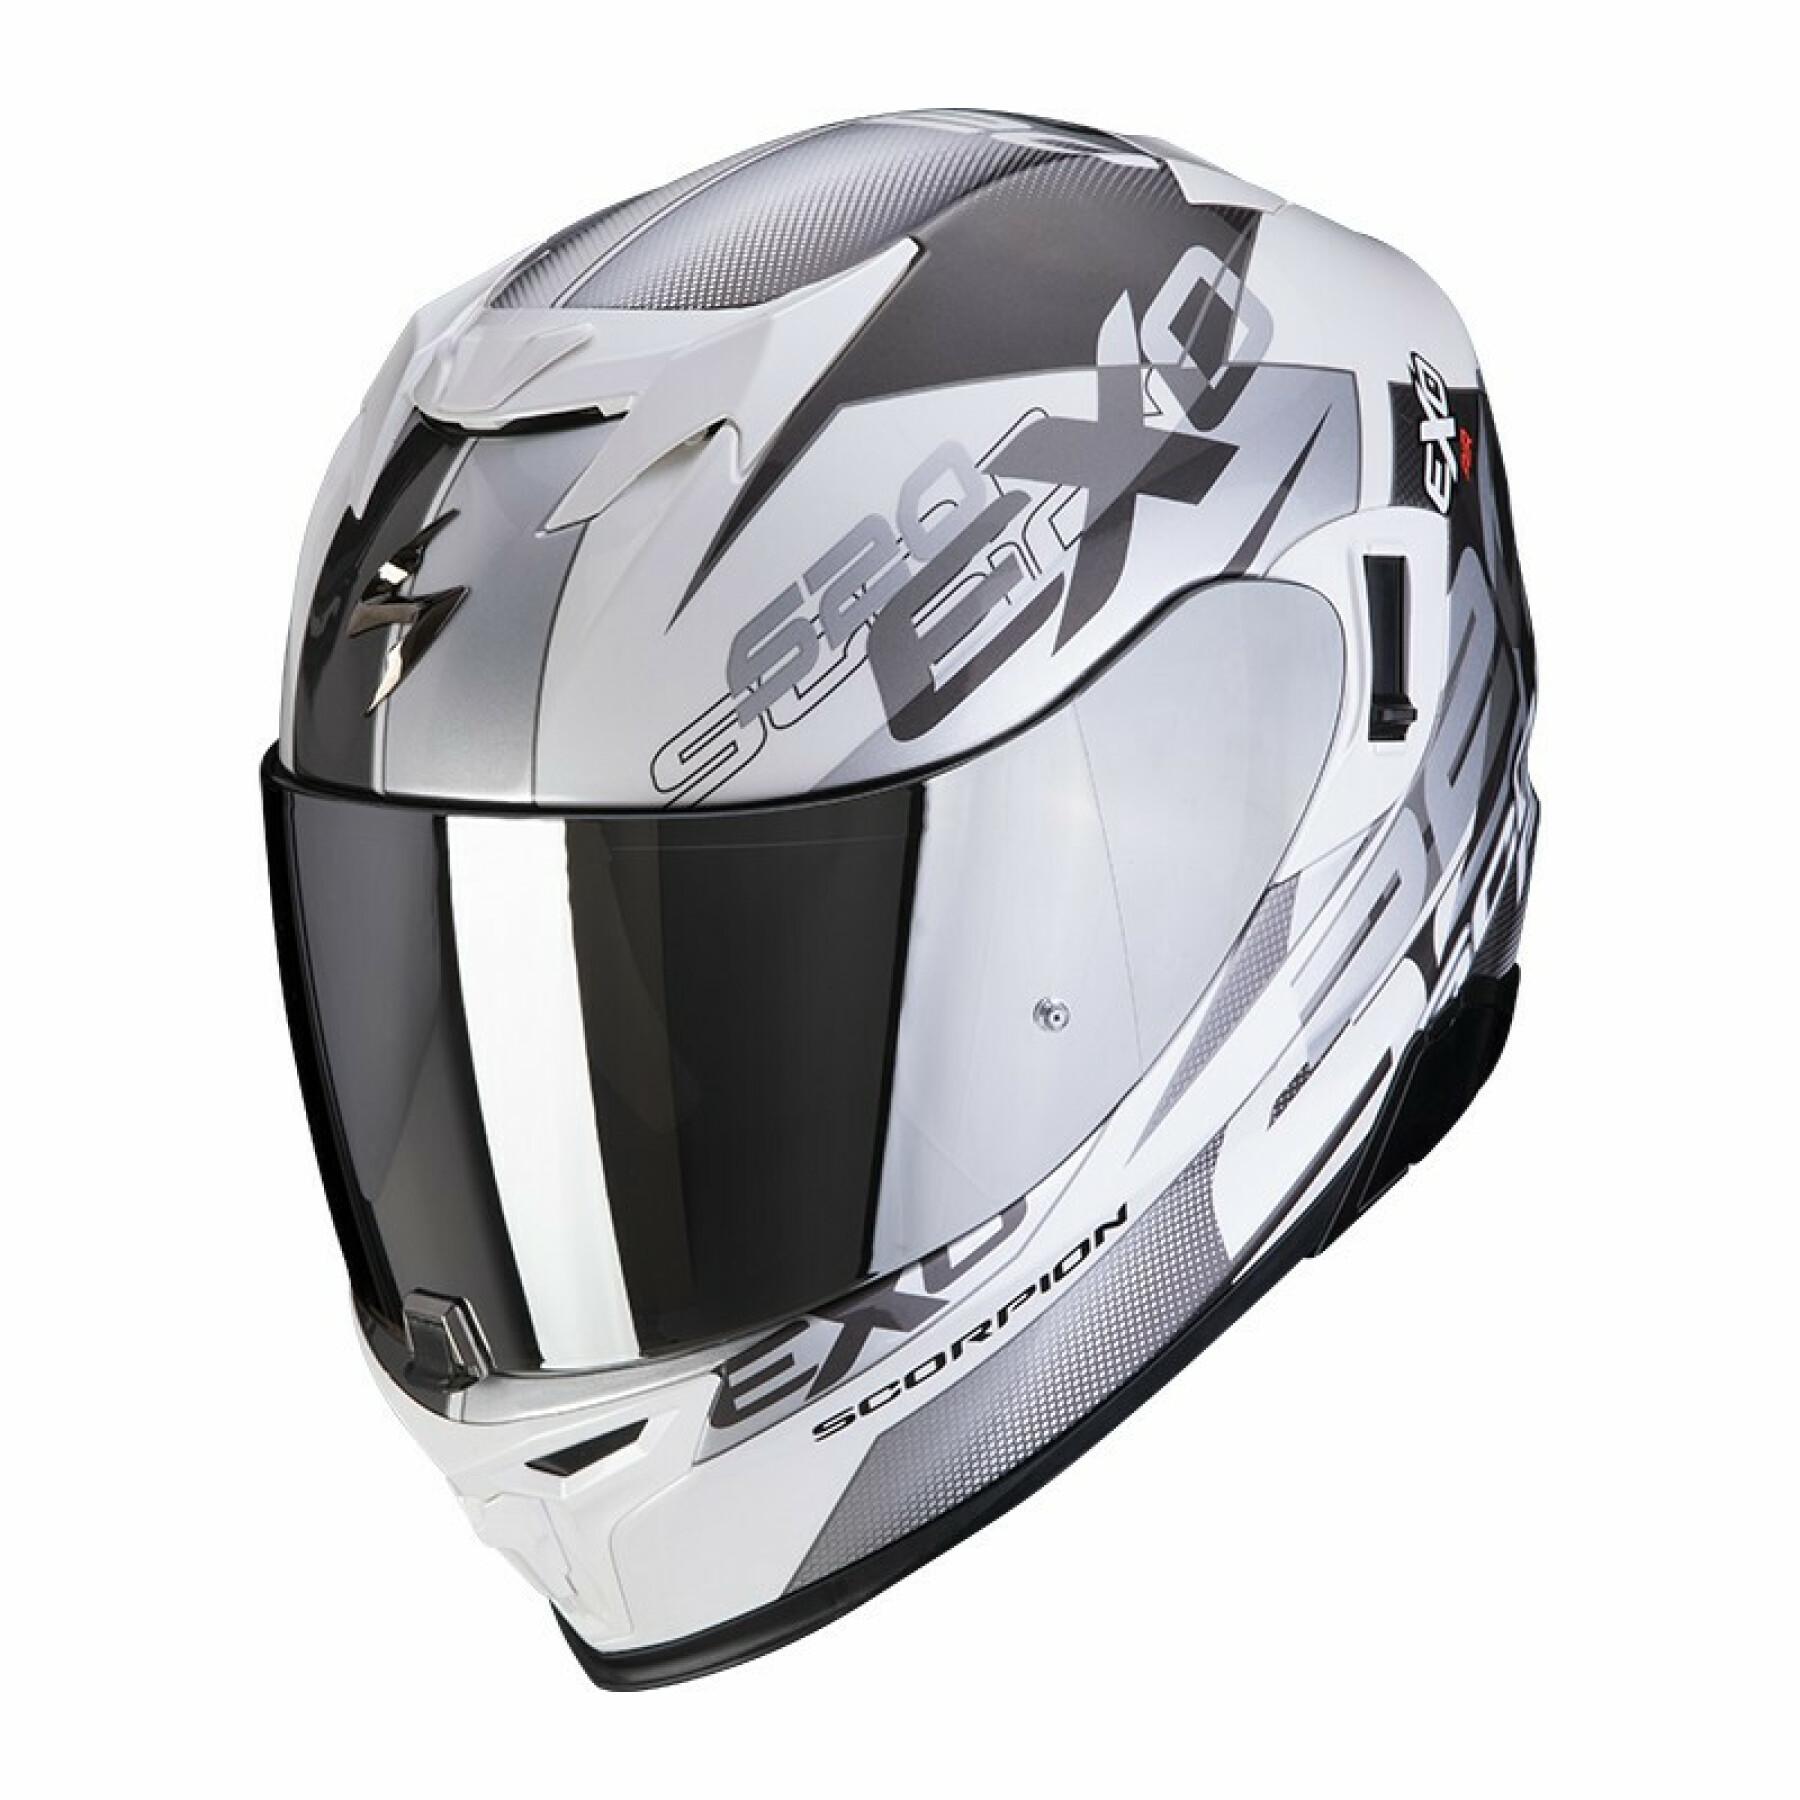 Full face helmet Scorpion Exo-520 Air COVER